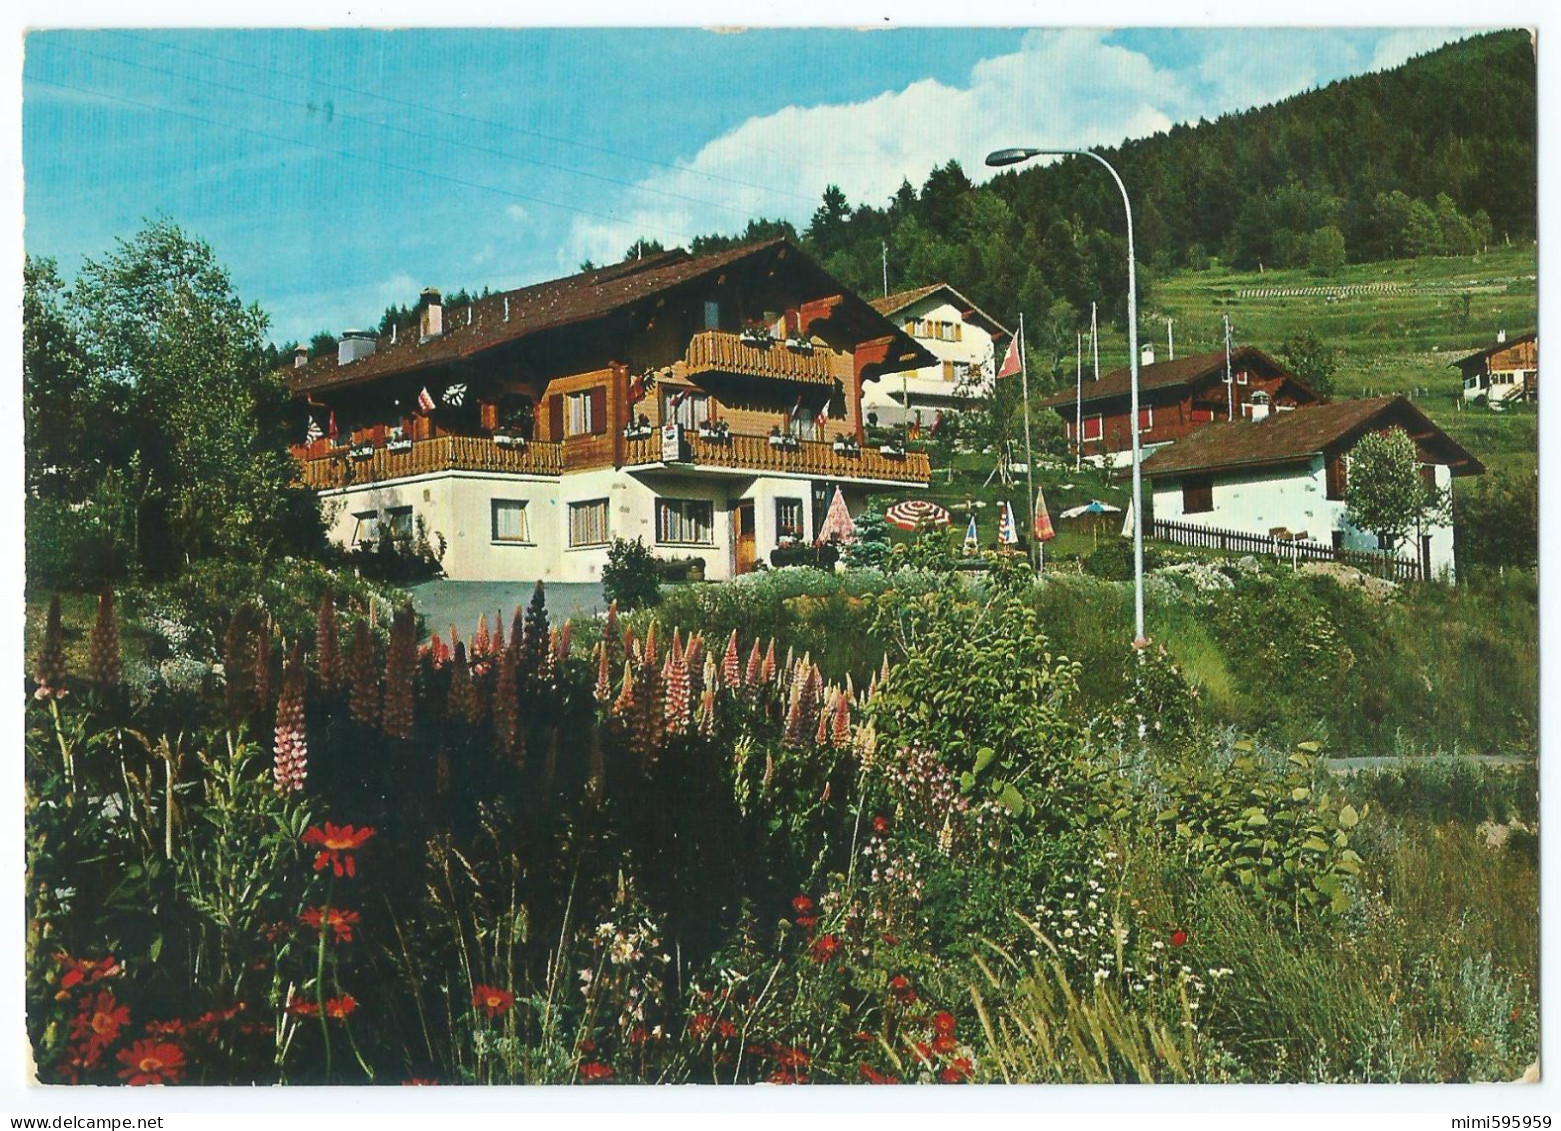 8001 - NAX Sur SION (Suisse) - Balcon Du Ciel - Auberge Restaurant 'Ma Vallée' -Animée -Circulée 1972 -Scan Recto-verso - Nax